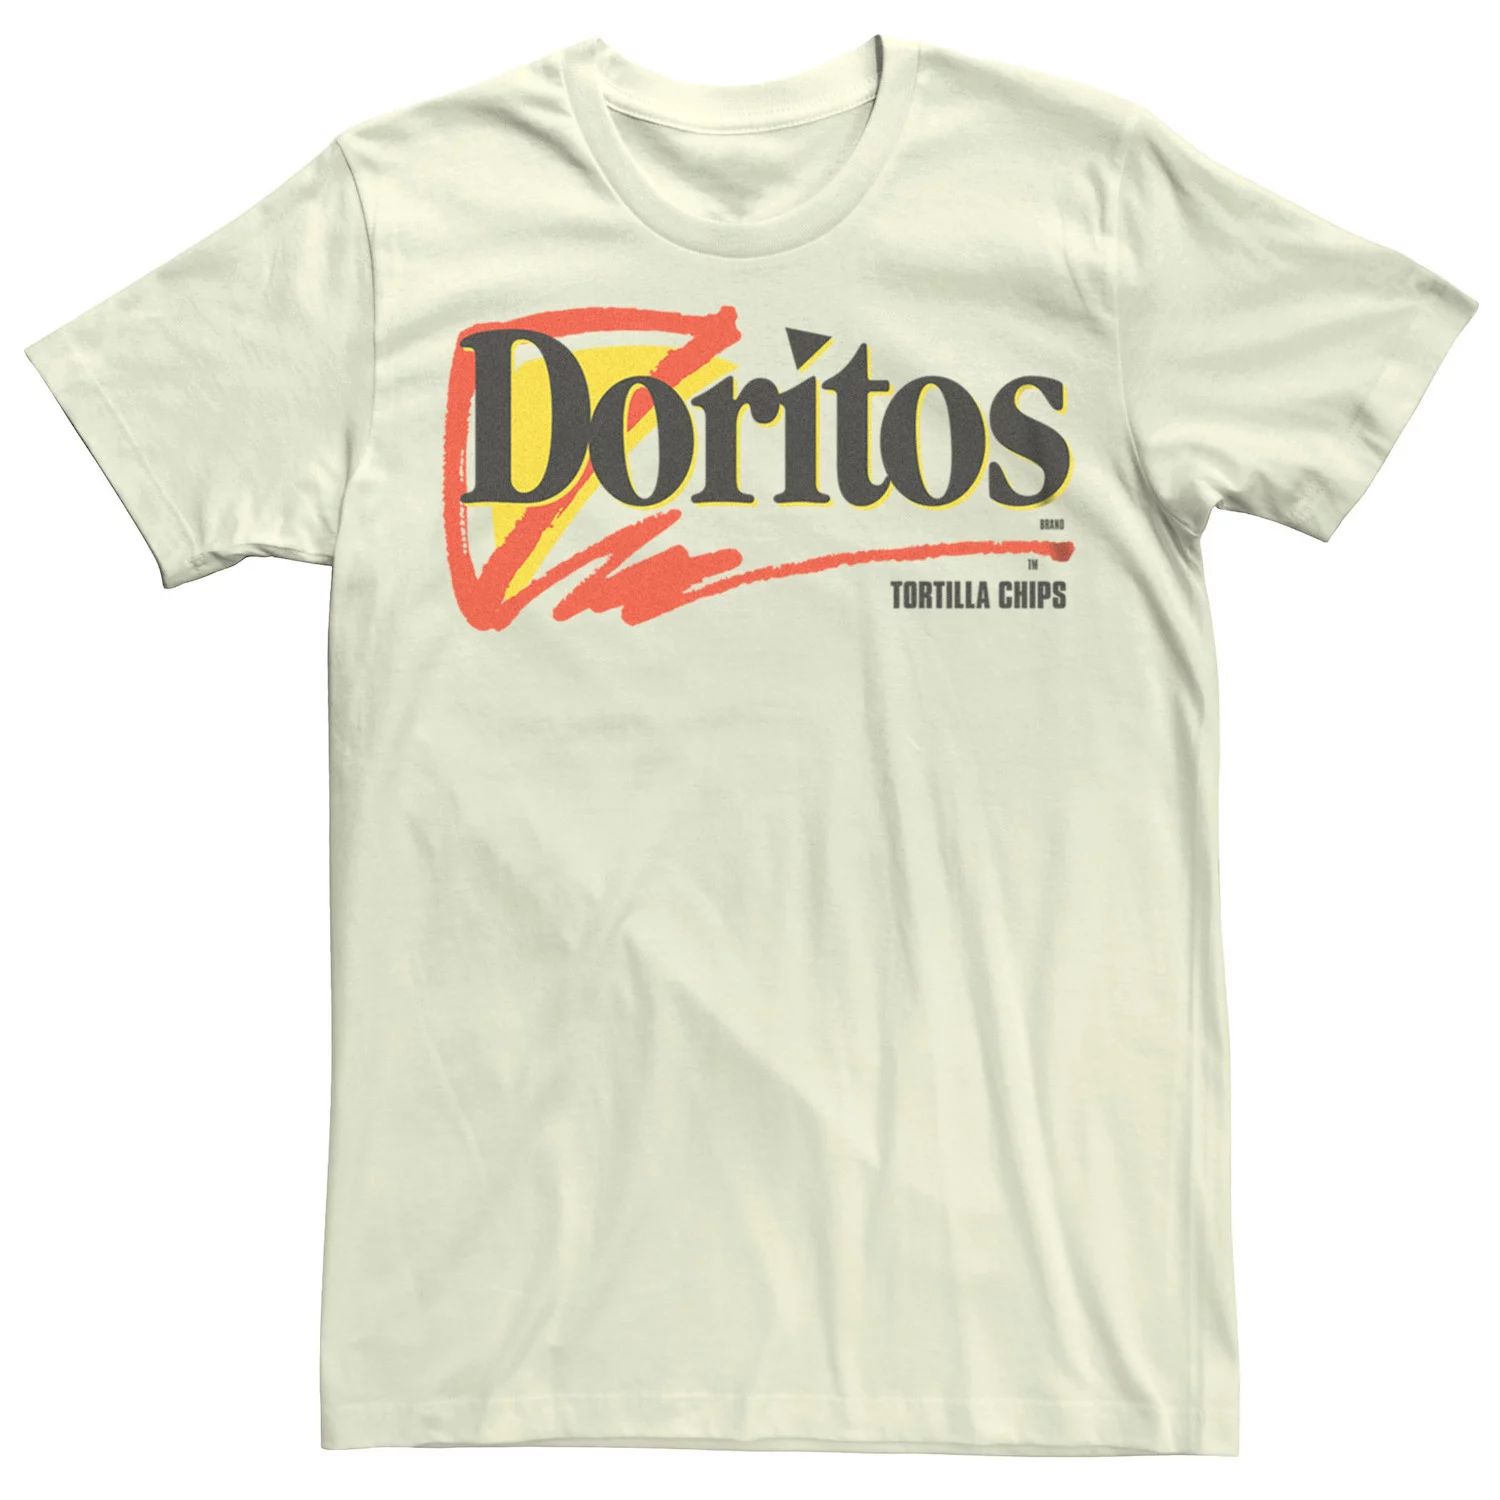 Мужская футболка с логотипом Doritos Tortilla Chips Licensed Character мужская футболка doritos tortilla chips flavors licensed character